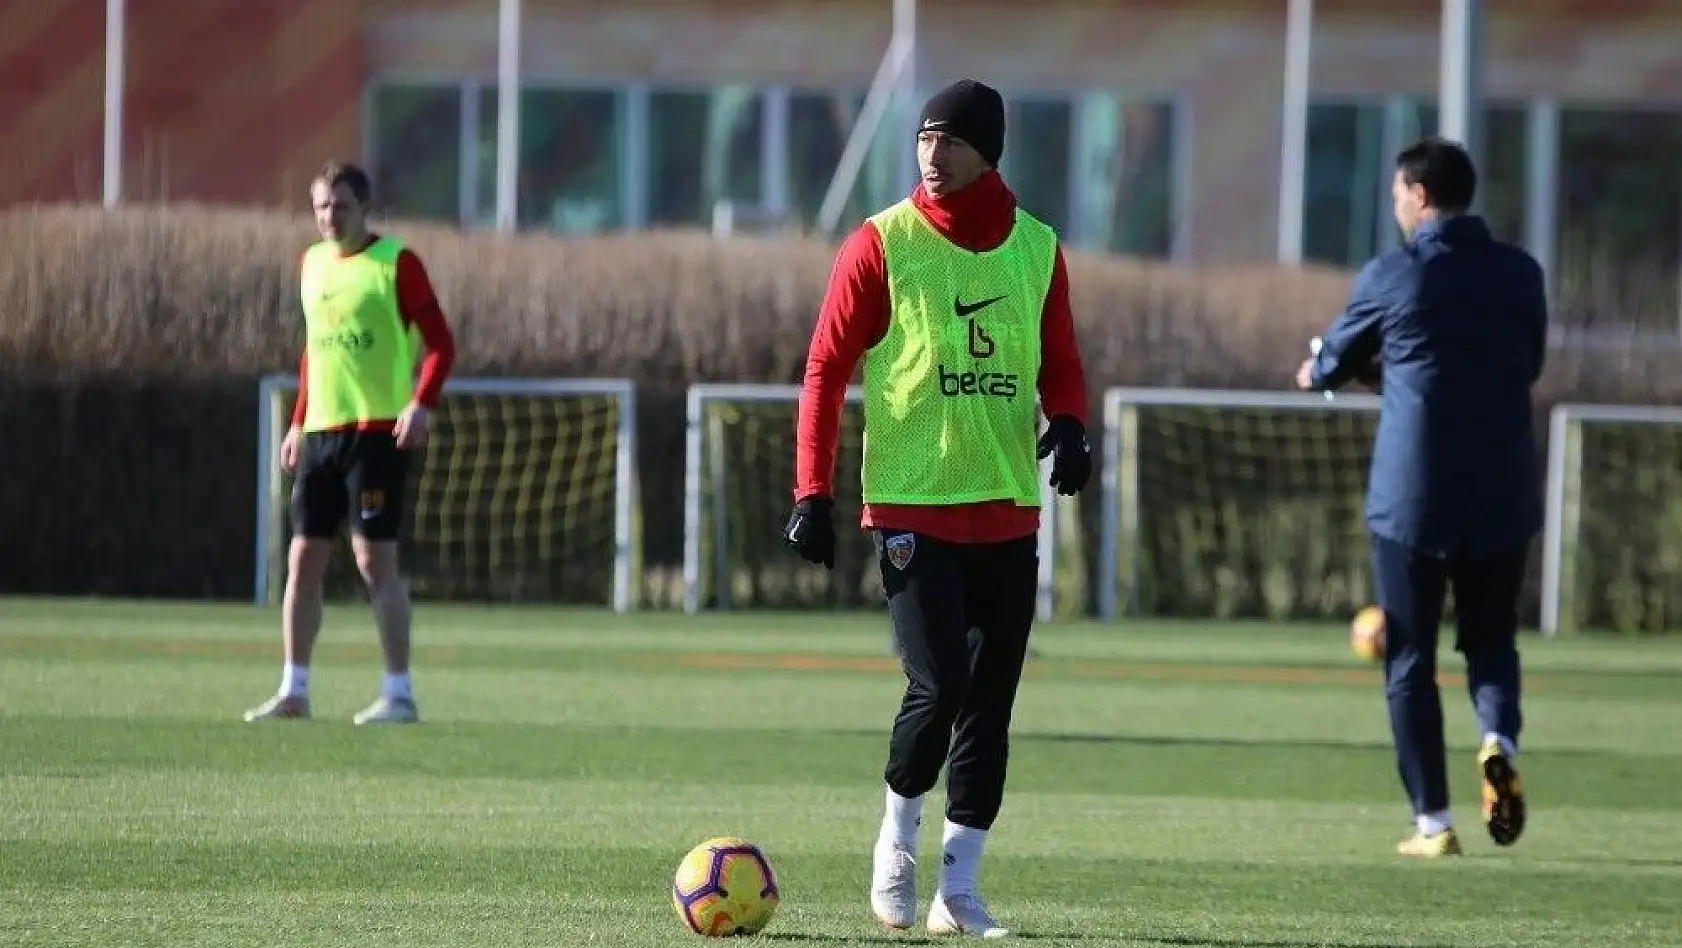 İstikbal Mobilya Kayserispor, Adana Demirspor ile hazırlık maçı yapacak